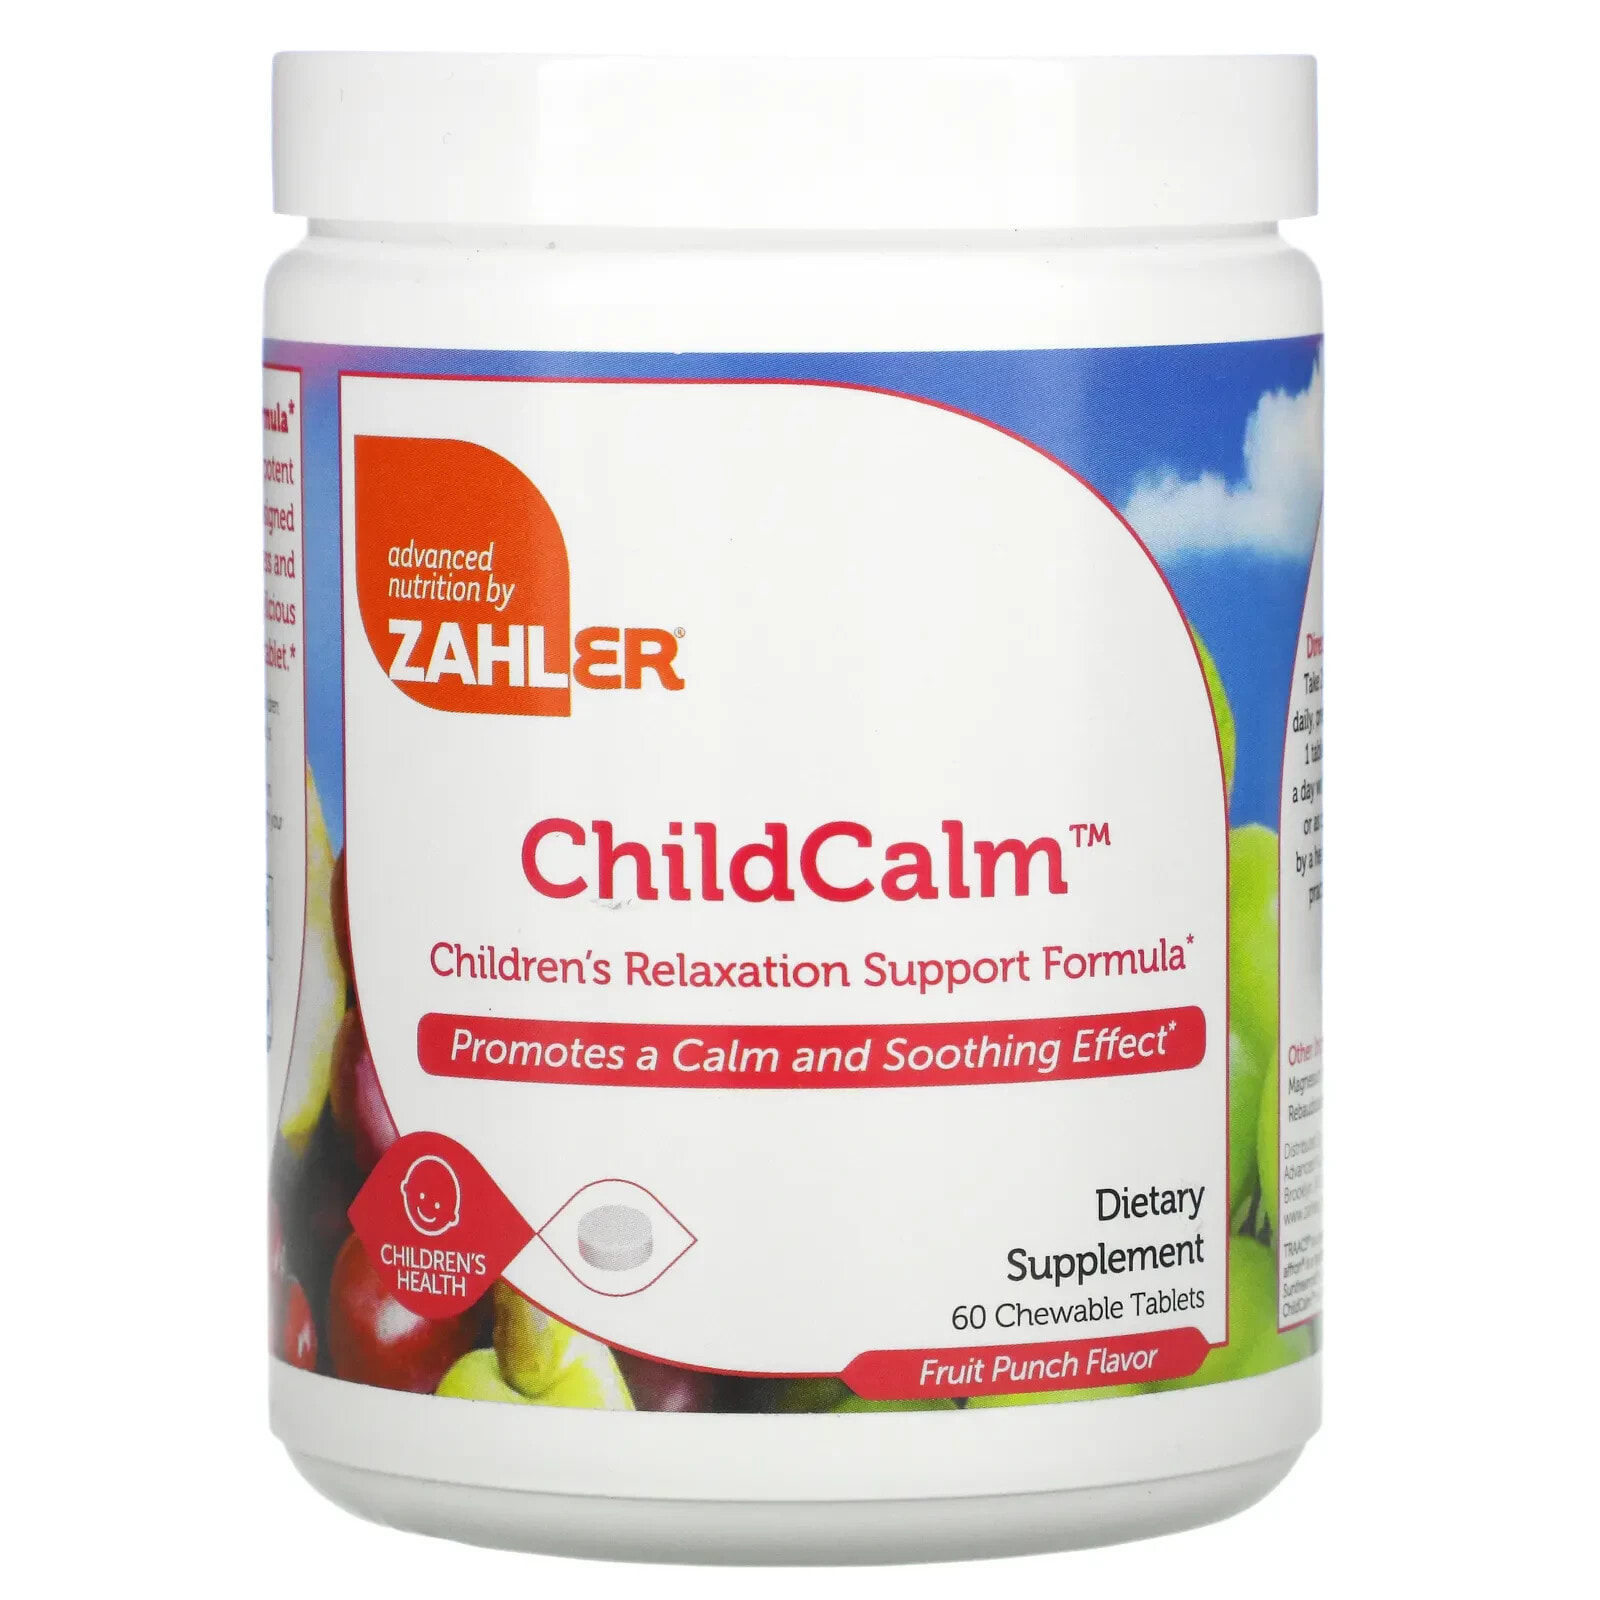 Залер, ChildCalm, формула для поддержки расслабления детей, фруктовый пунш, 60 жевательных таблеток